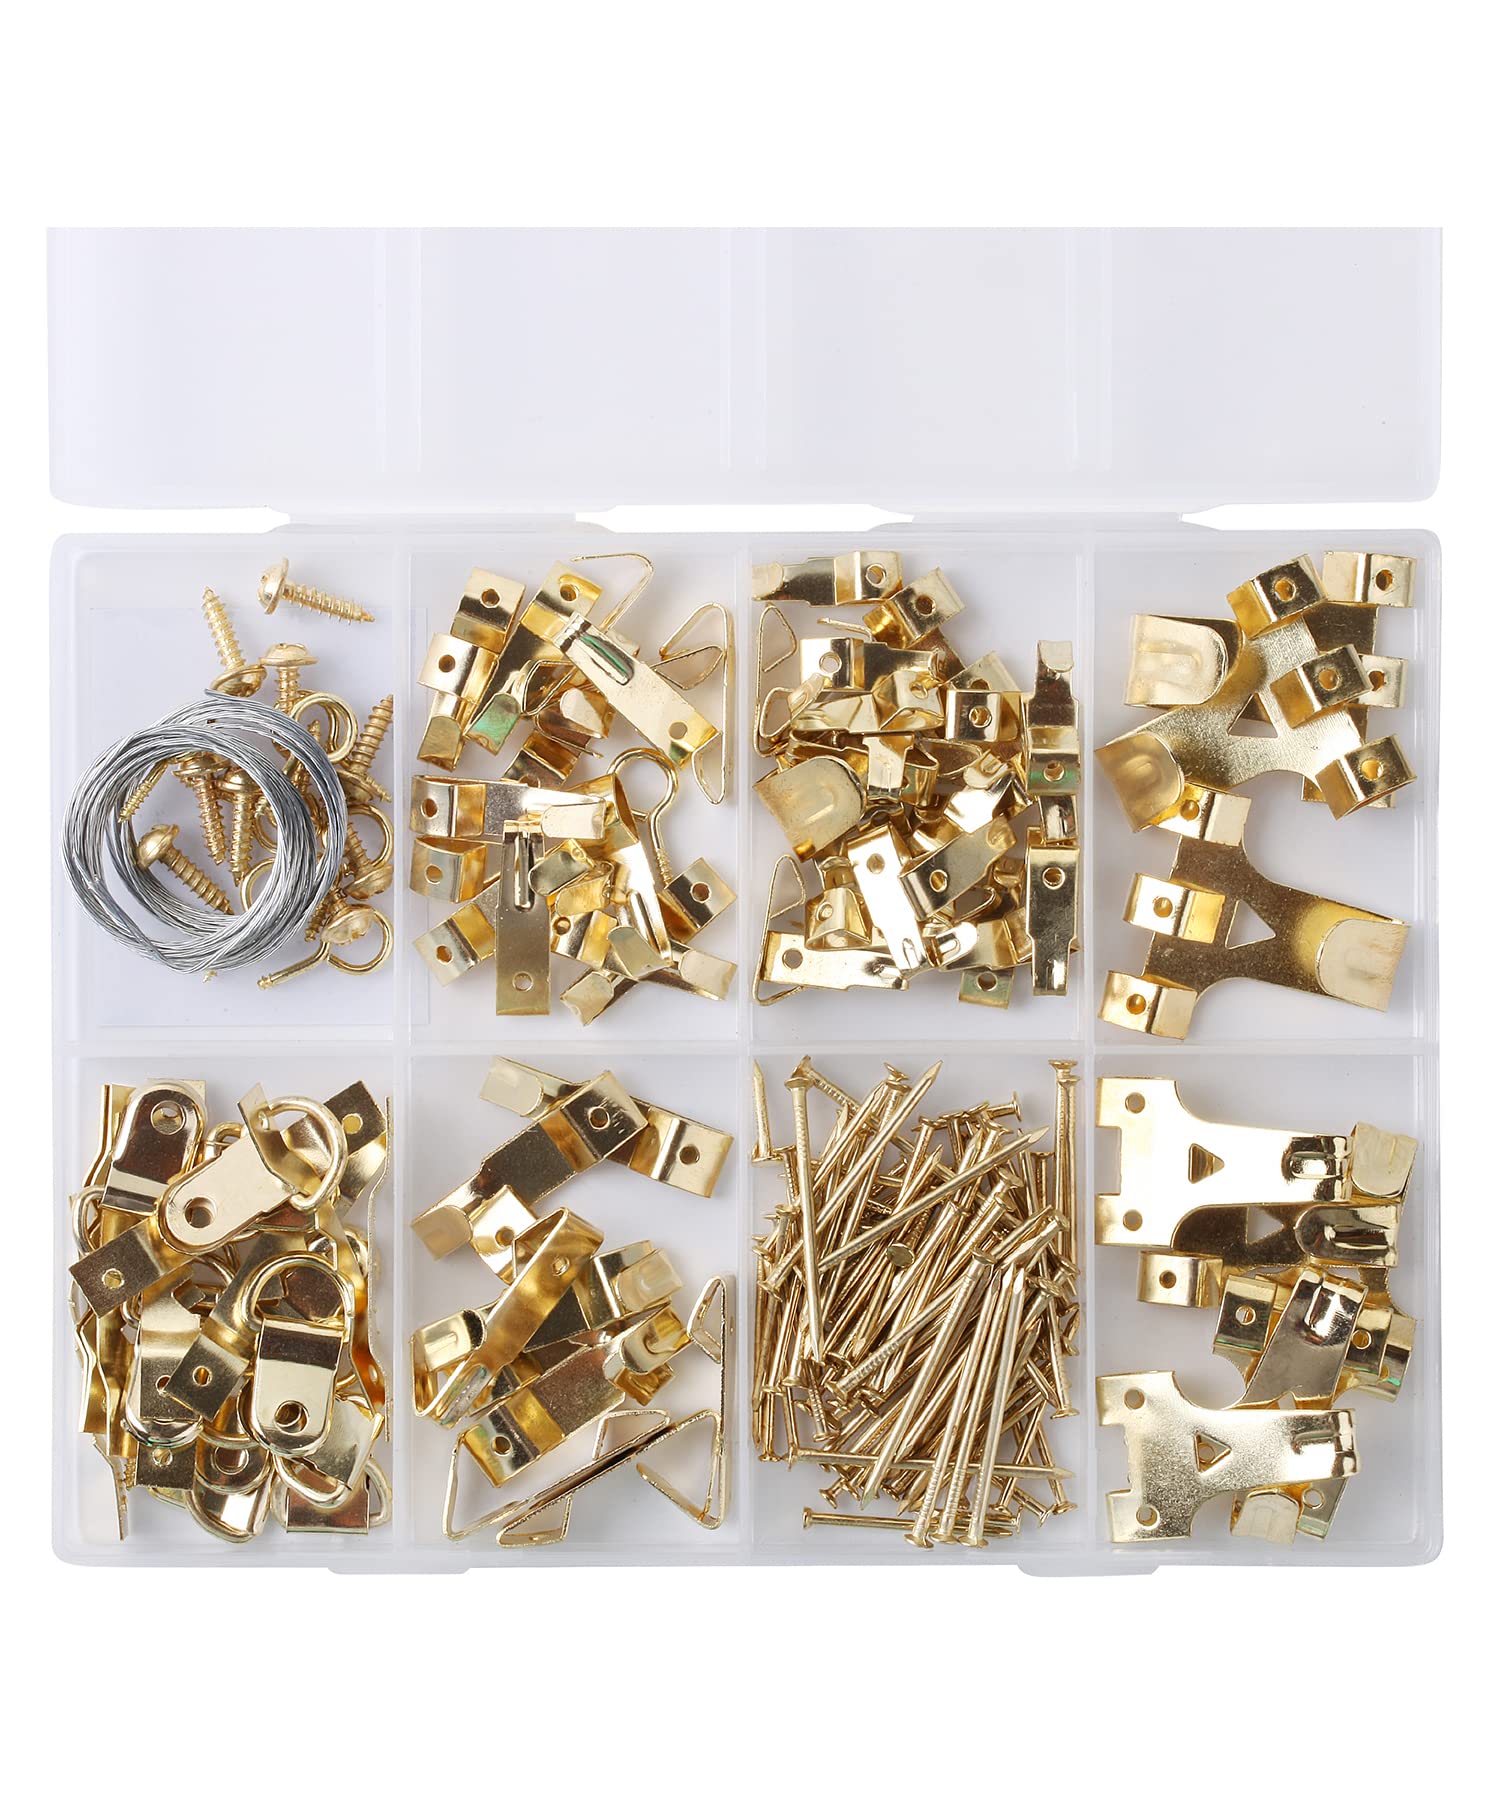 Mr. Pen- Jewelry Pliers, 3 Pack, Jewelry Making kit - Mr. Pen Store